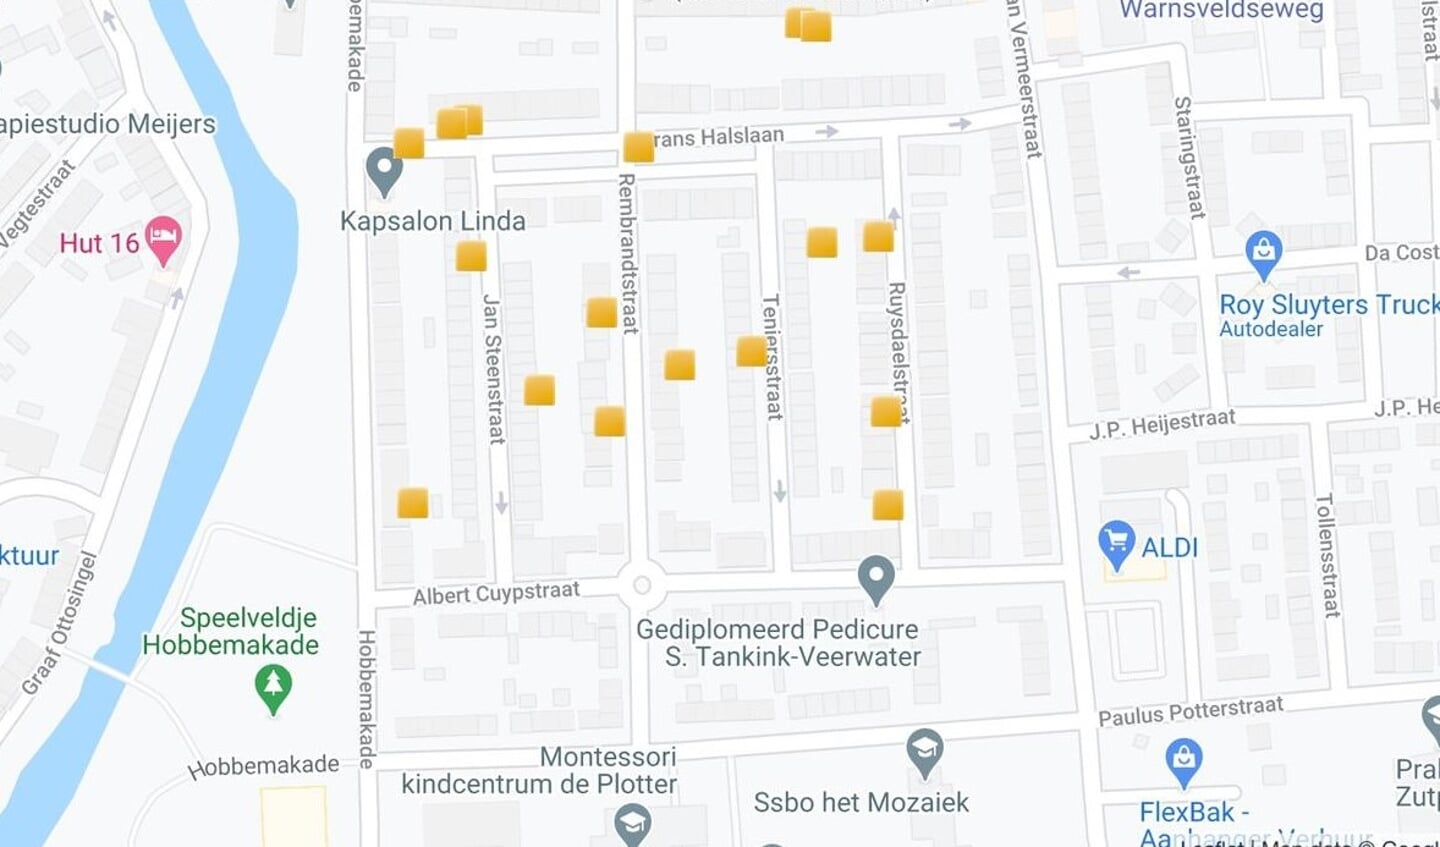 Overzichtskaart van de locaties in de Schilderswijk waar Joodse gezinnen woonden in de Tweede Wereldoorlog. Bron: stolpersteinezutphen.nl